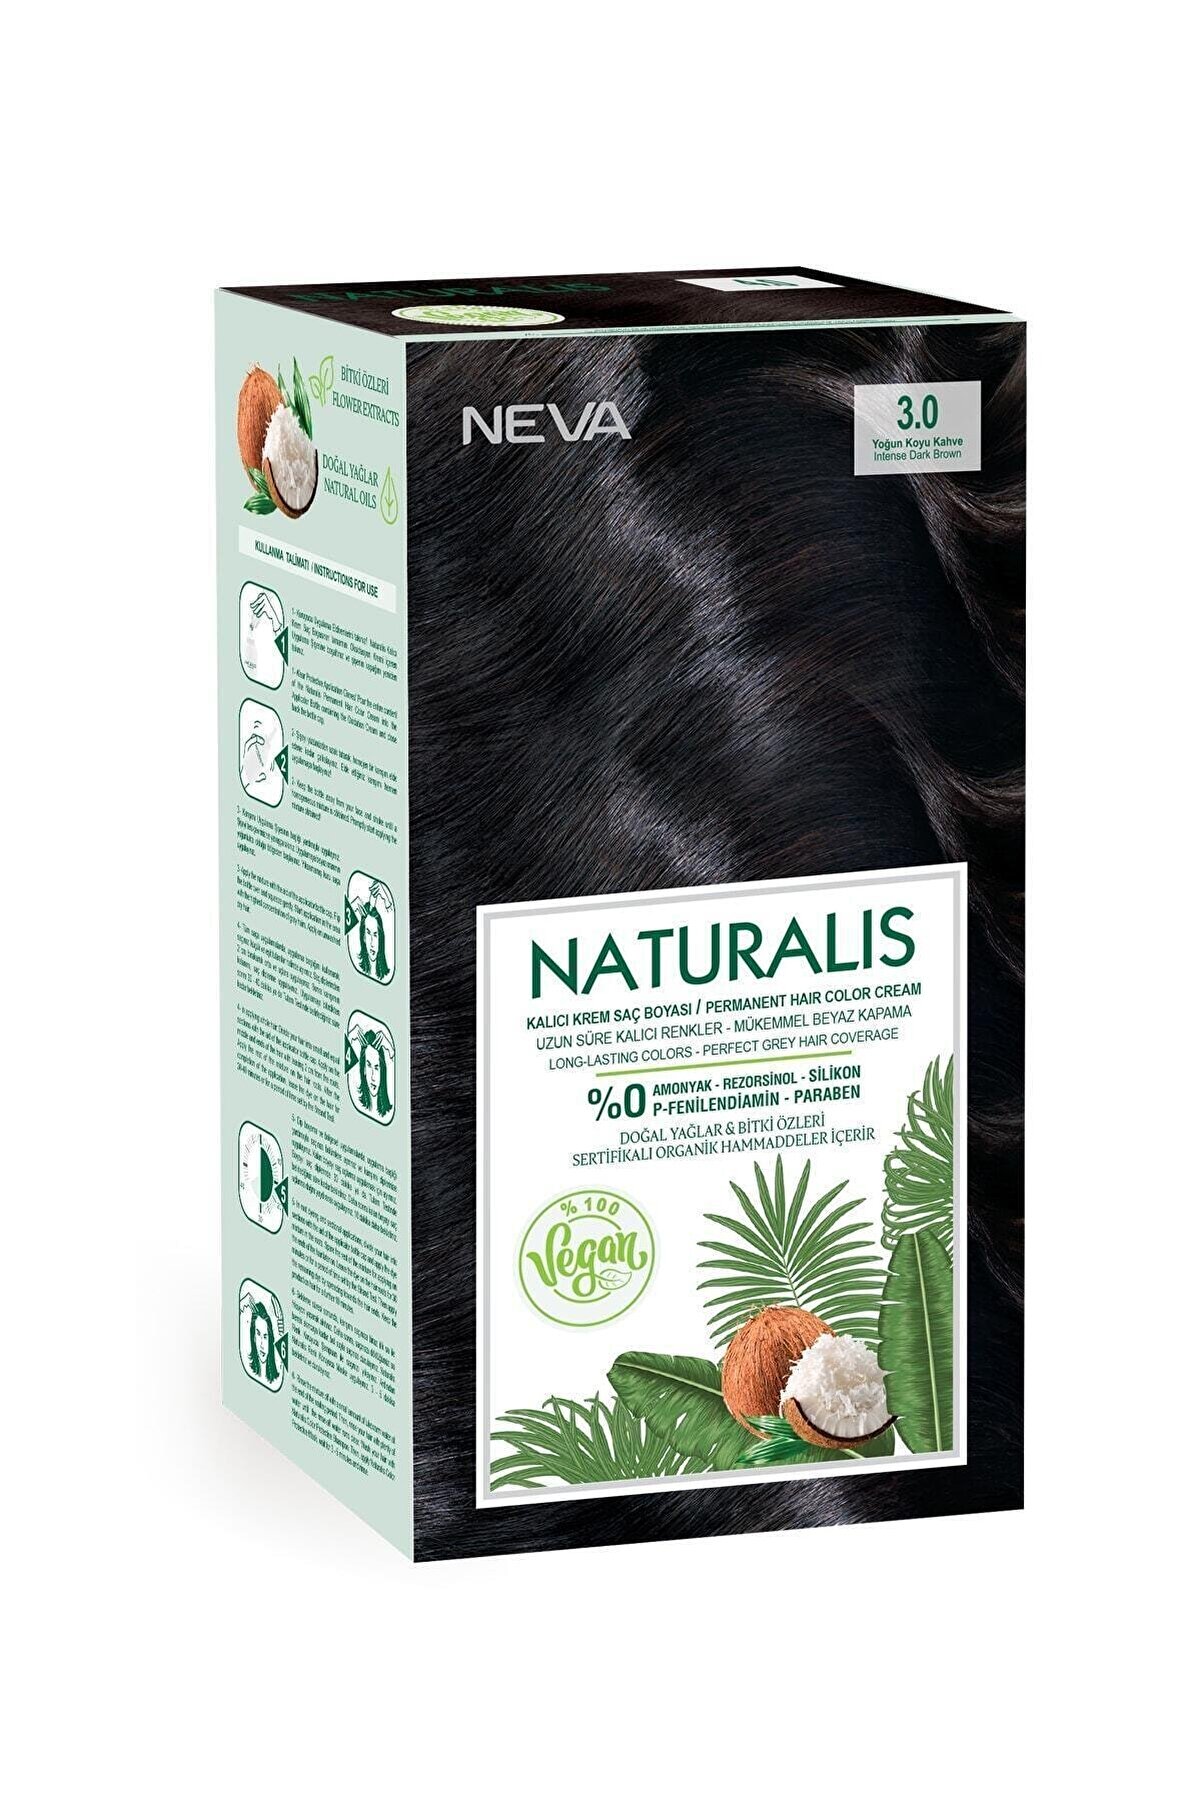 NEVA KOZMETİK Naturalis Saç Boyası 3.0 Yoğun Koyu Kahve %100 Vegan